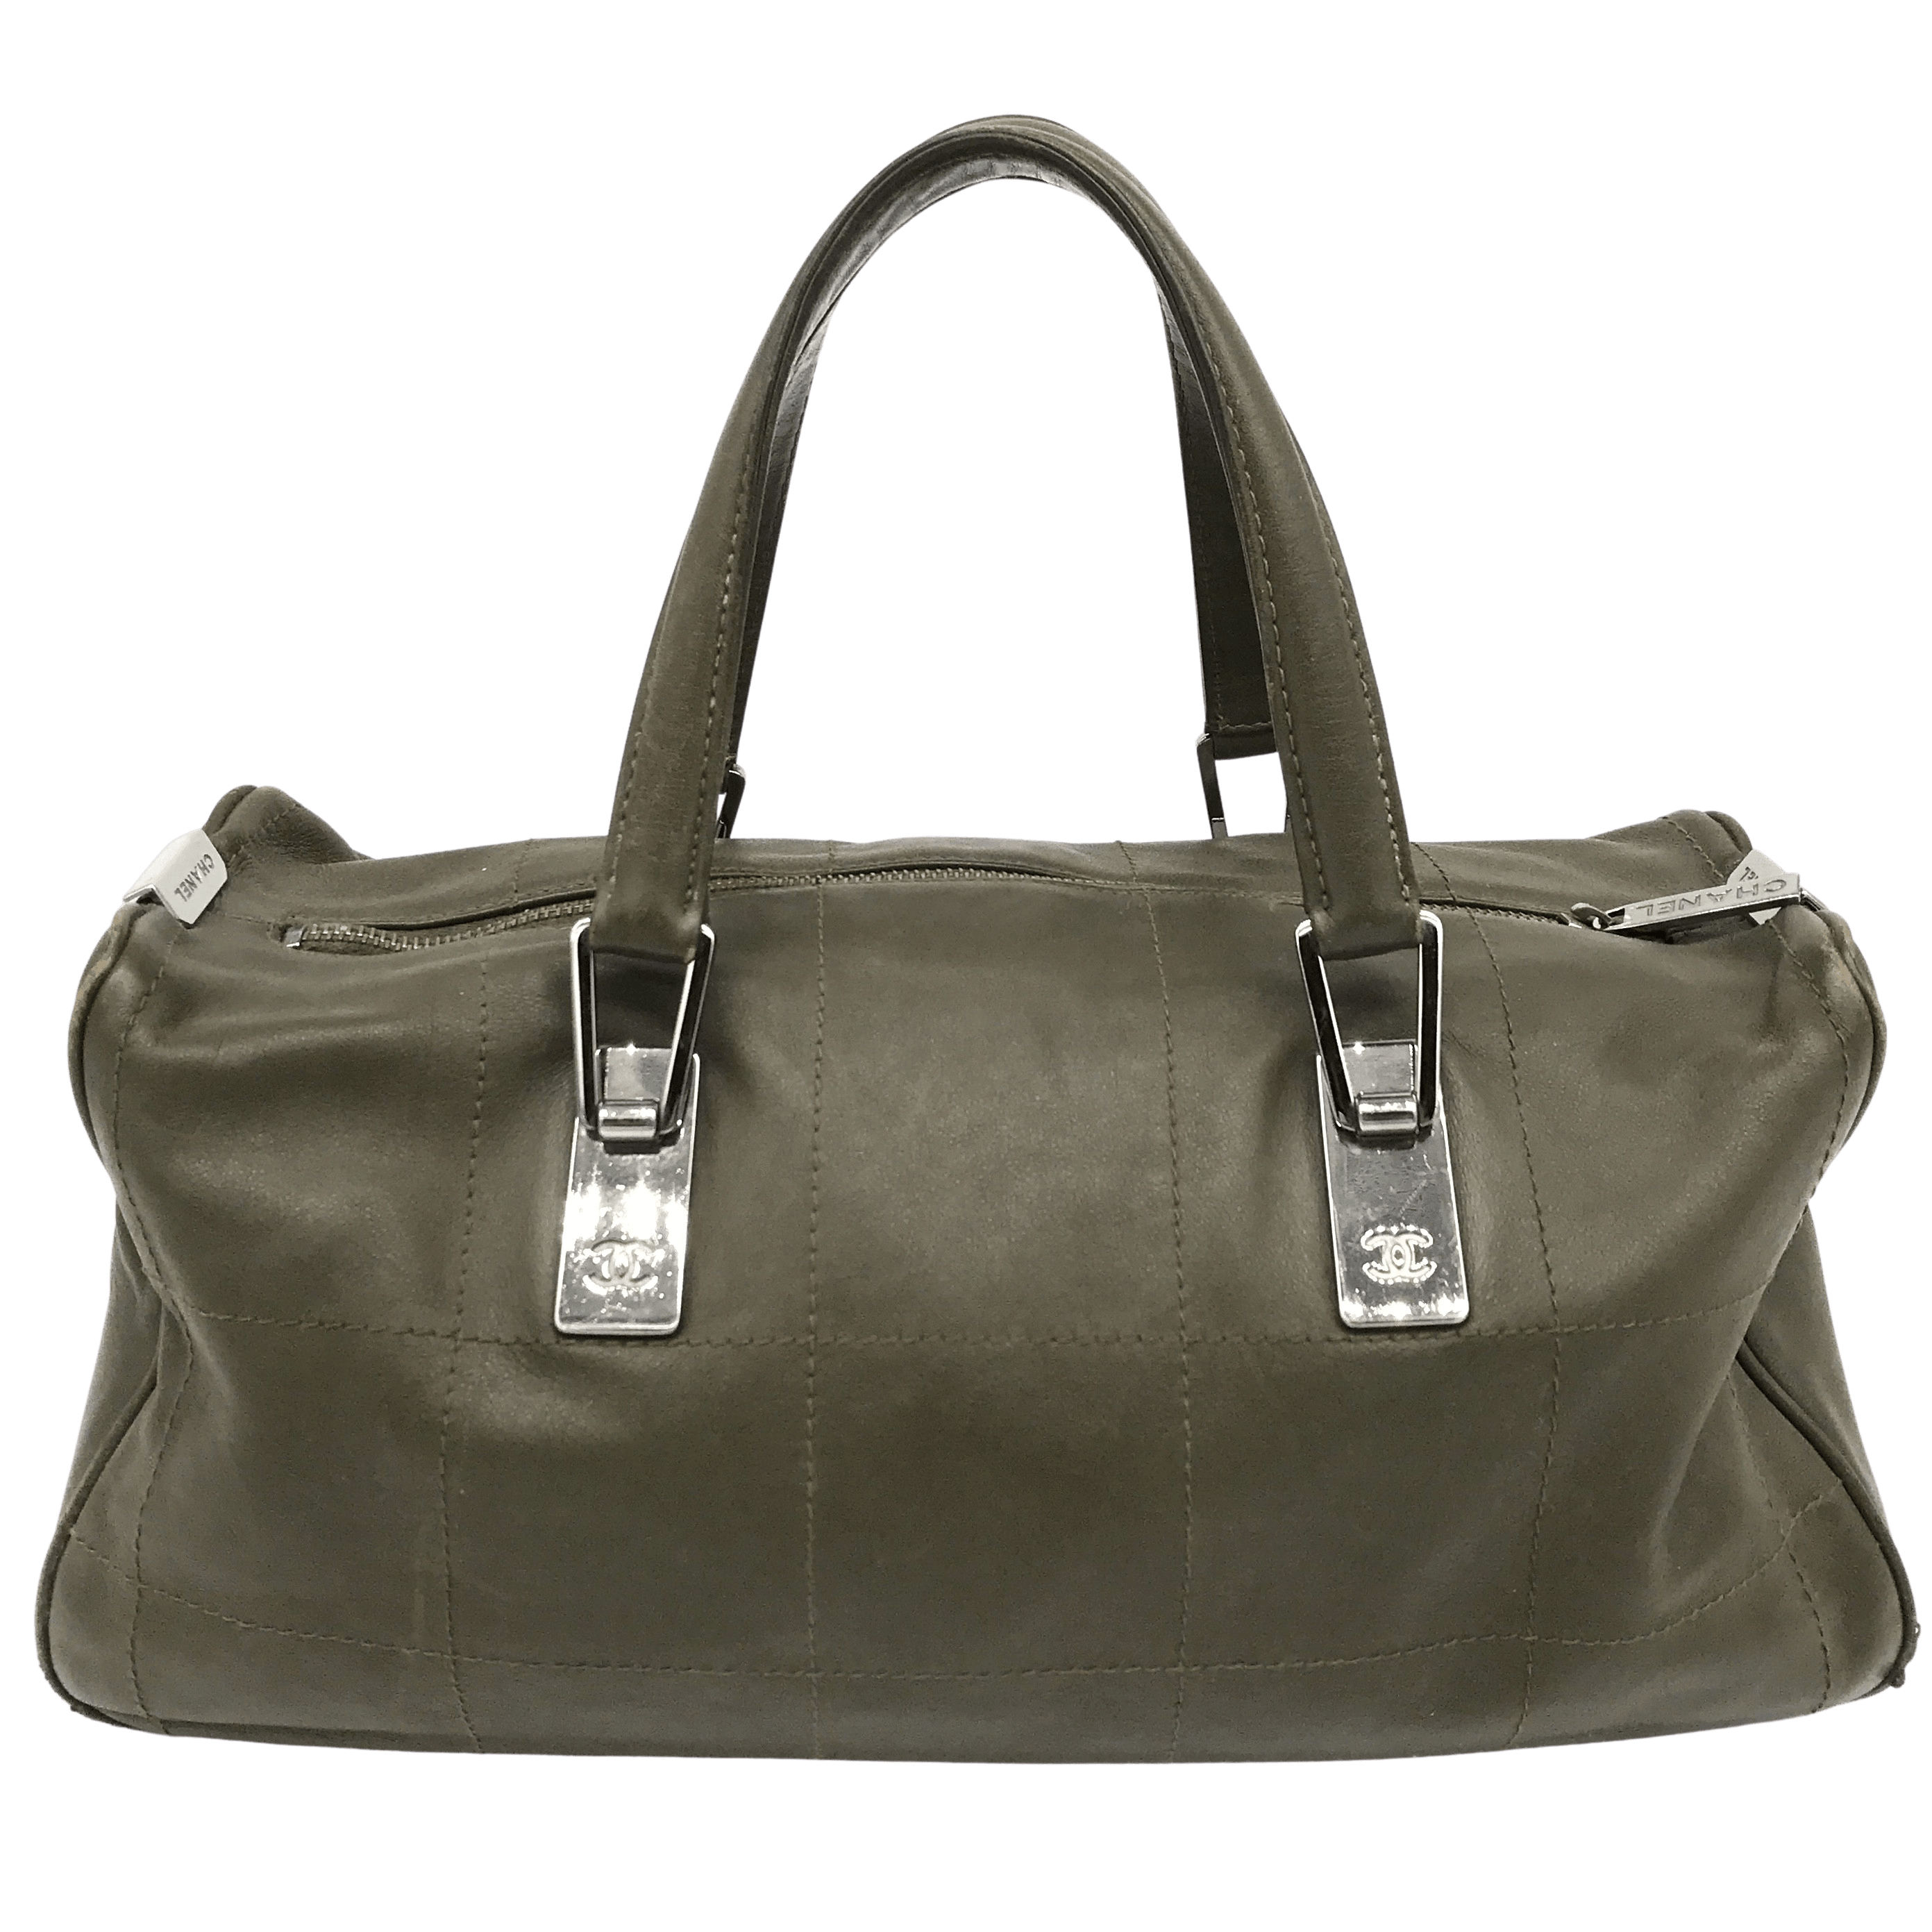 vintage green chanel bag